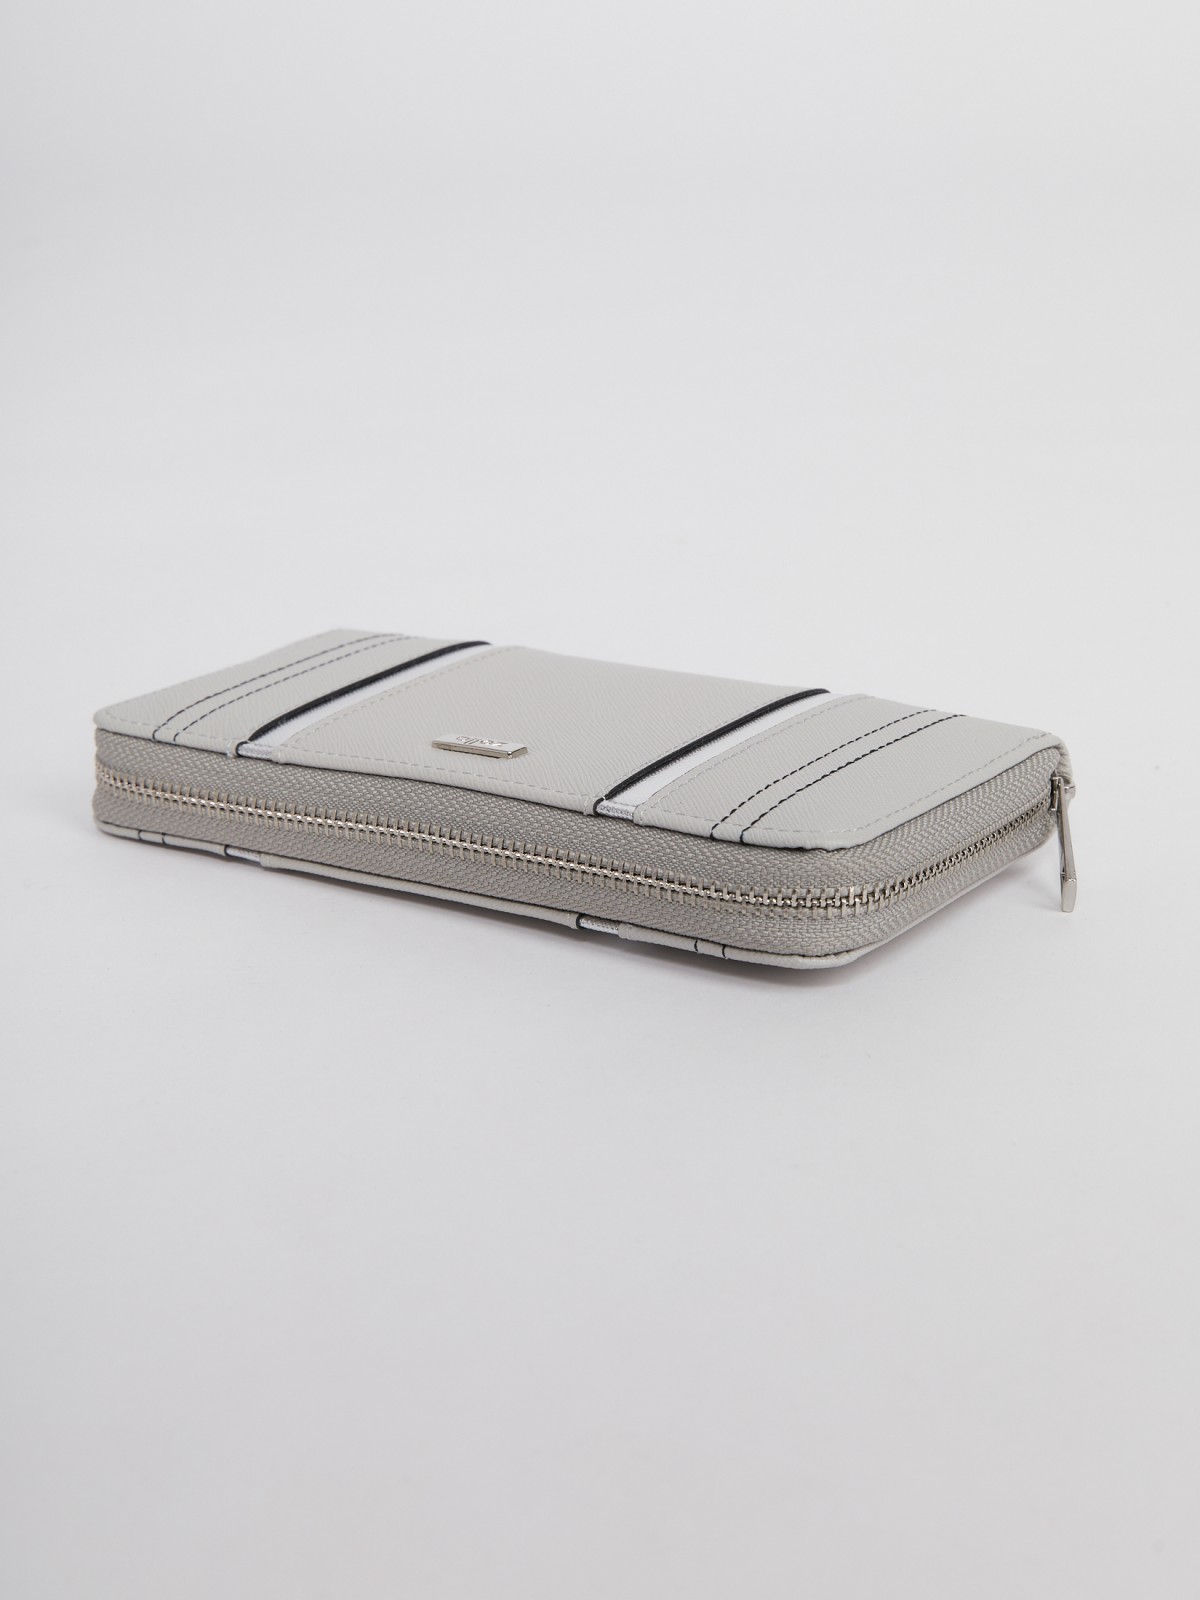 Прямоугольный кошелек на молнии zolla 02131946J375, цвет серый, размер No_size - фото 4